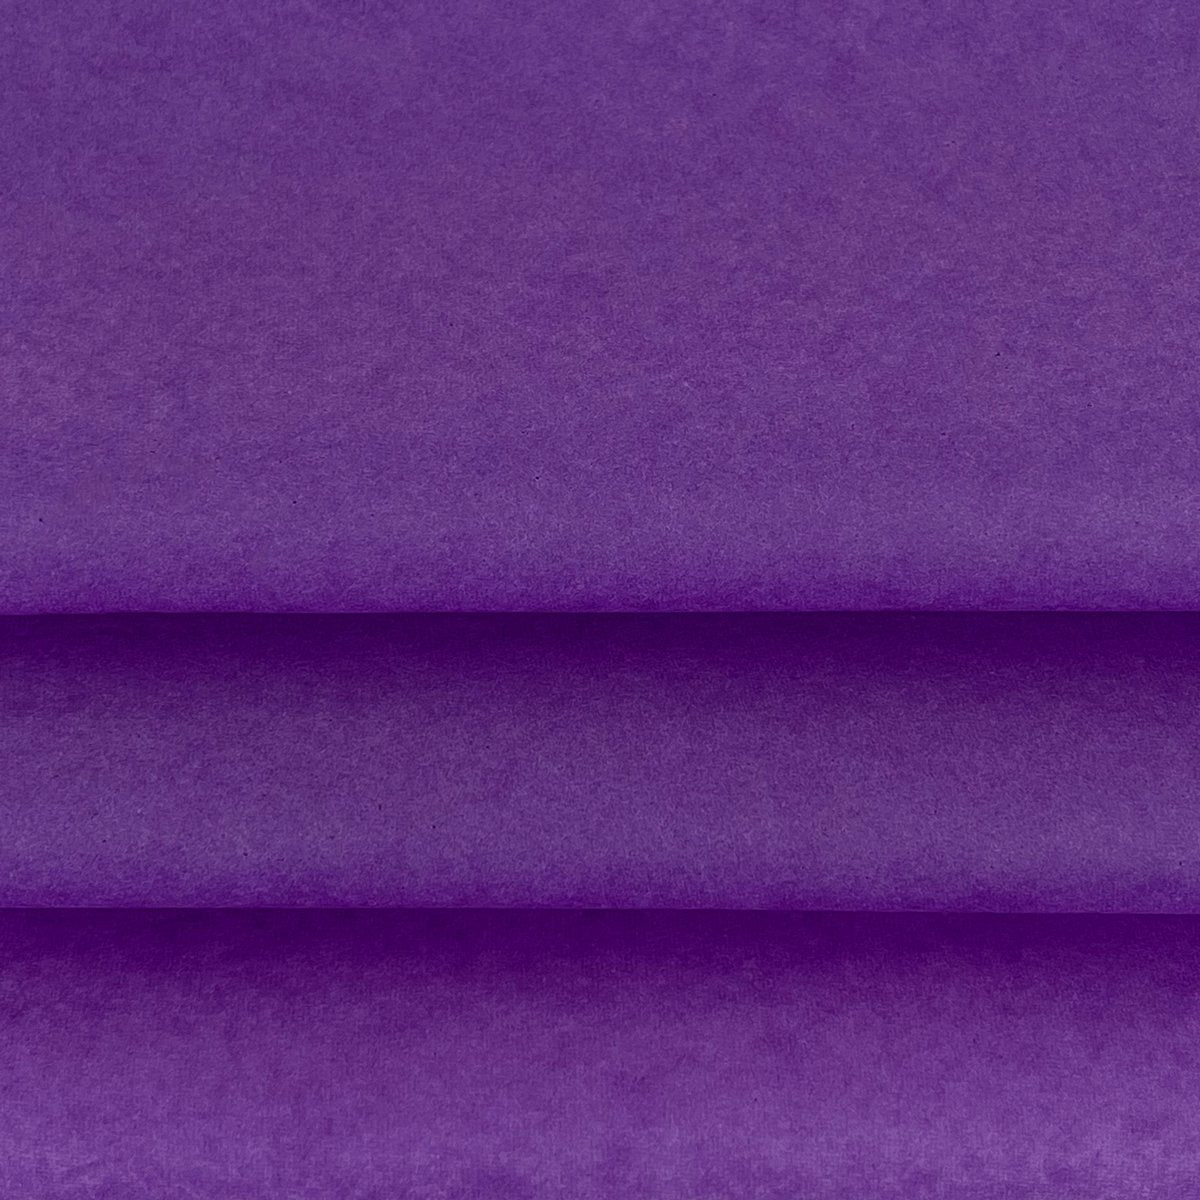 Vloeipapier - Verschillende paarse kleuren